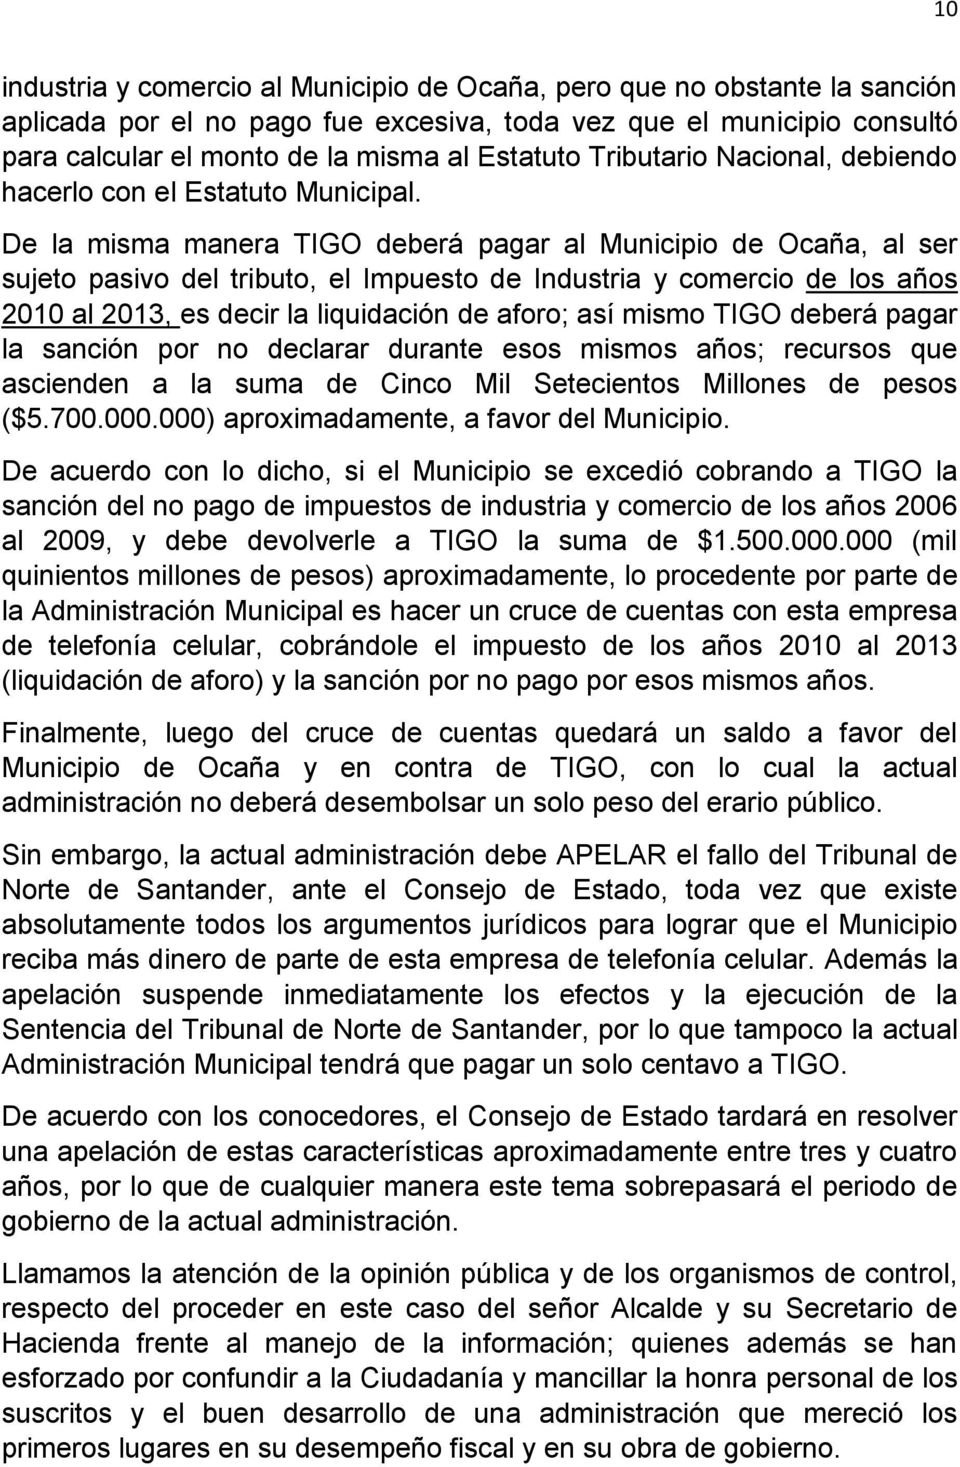 De la misma manera TIGO deberá pagar al Municipio de Ocaña, al ser sujeto pasivo del tributo, el Impuesto de Industria y comercio de los años 2010 al 2013, es decir la liquidación de aforo; así mismo